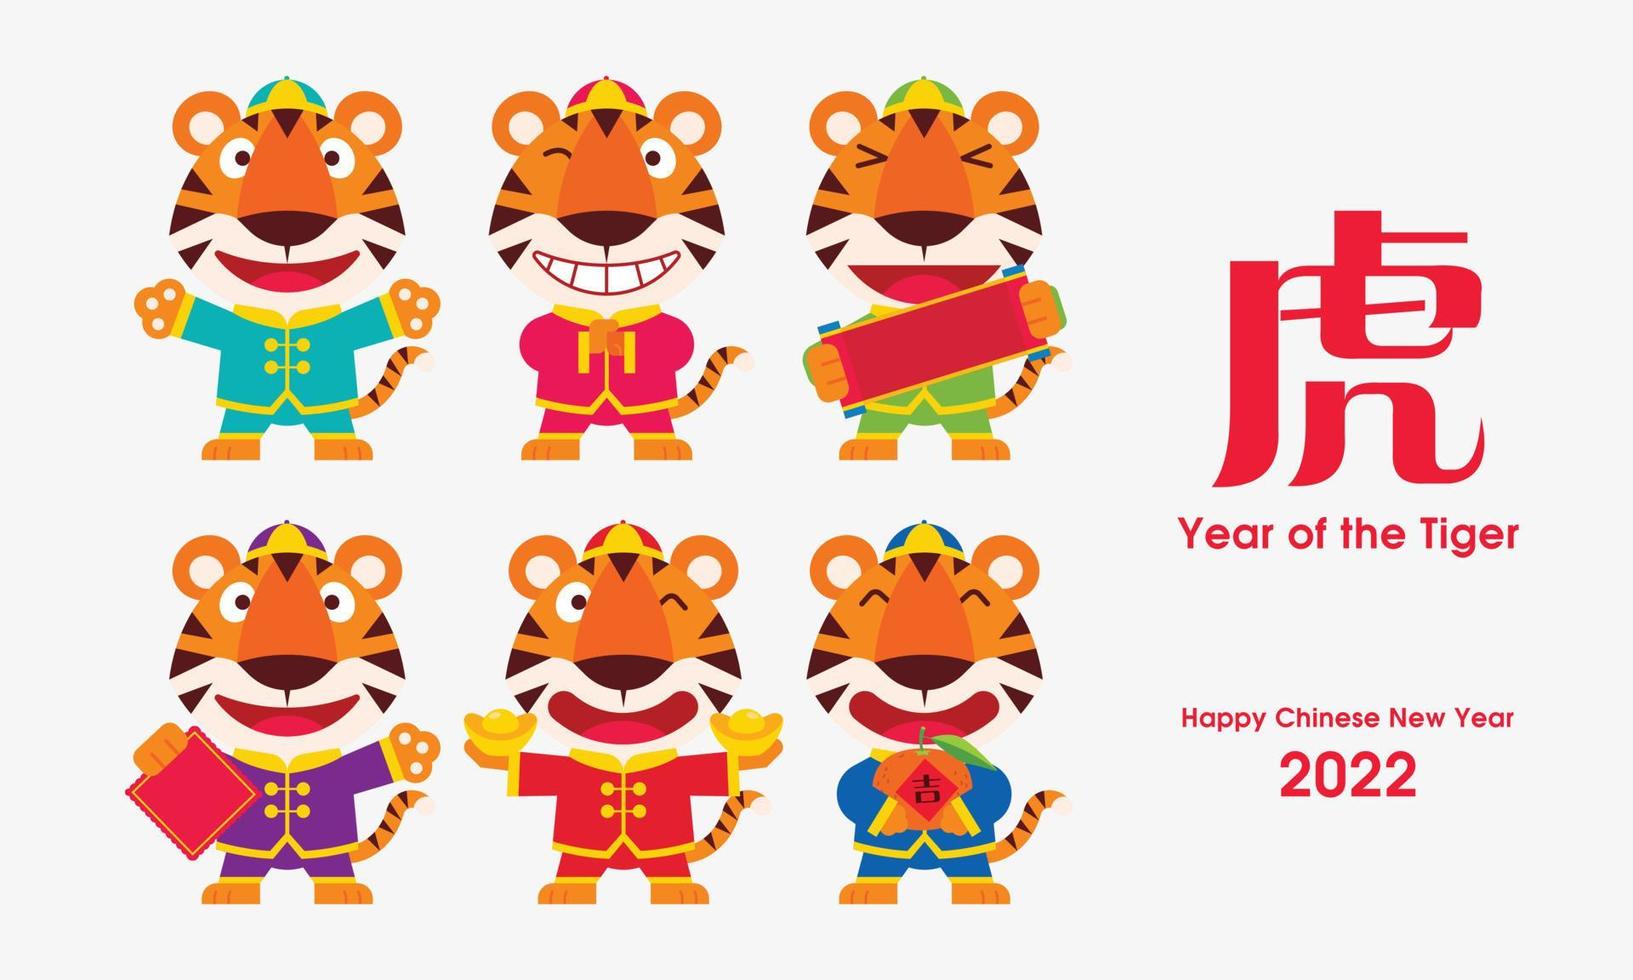 Frohes chinesisches neues Jahr 2022. Cartoon süßer Tiger mit lustigem Gesicht in traditioneller chinesischer Tracht. Jahr des Tigers vektor